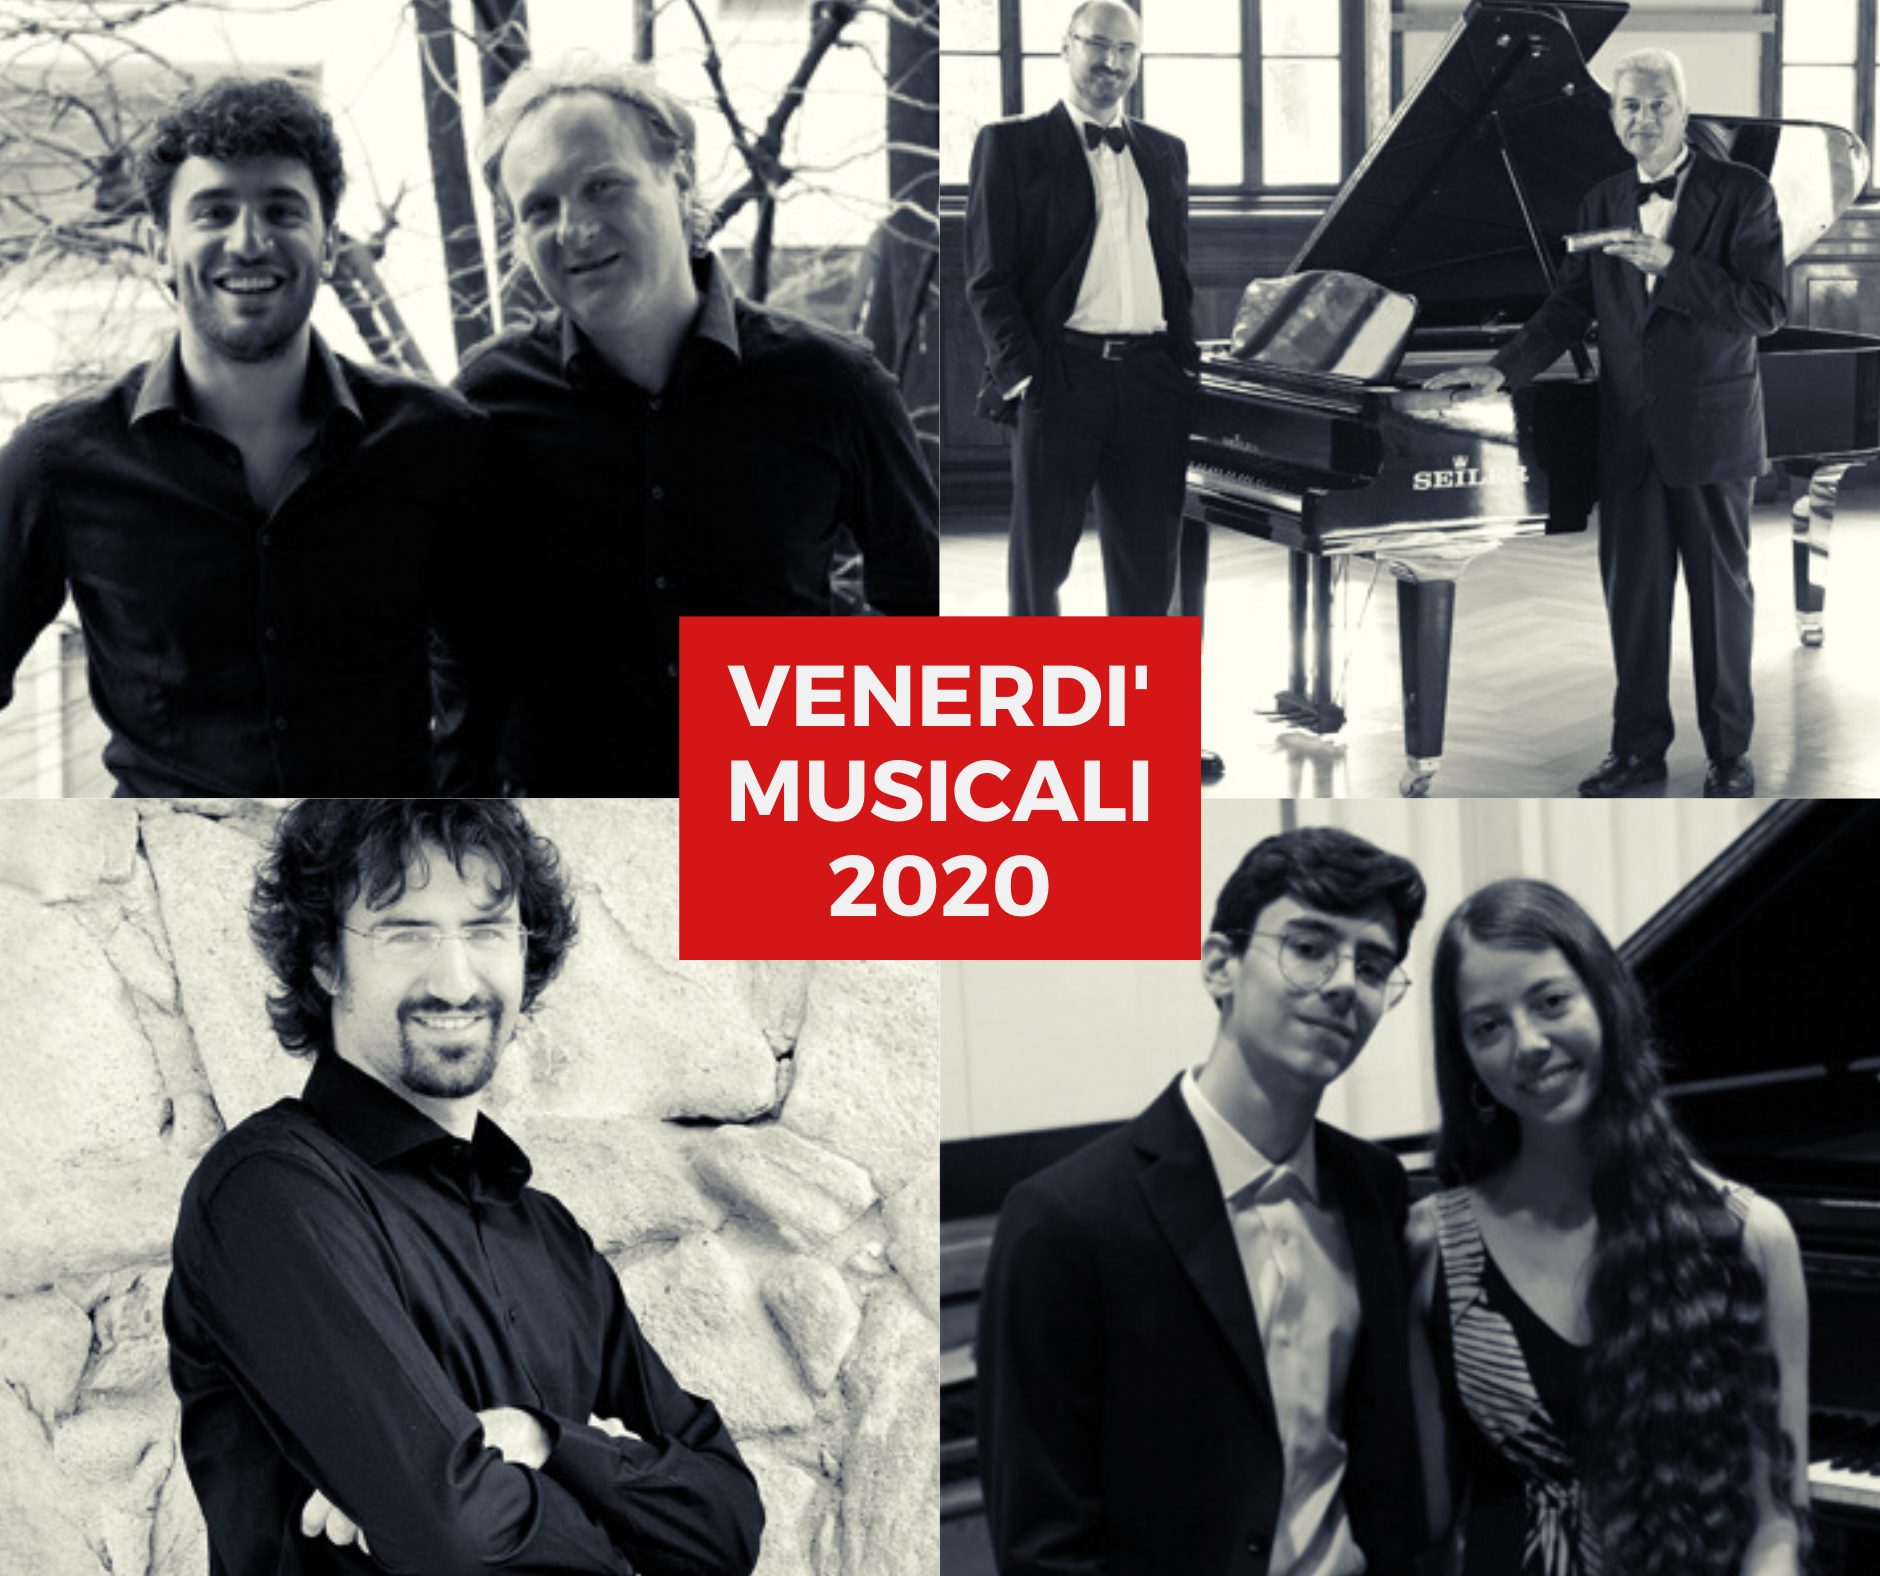 Venerdi' Musicali 2020